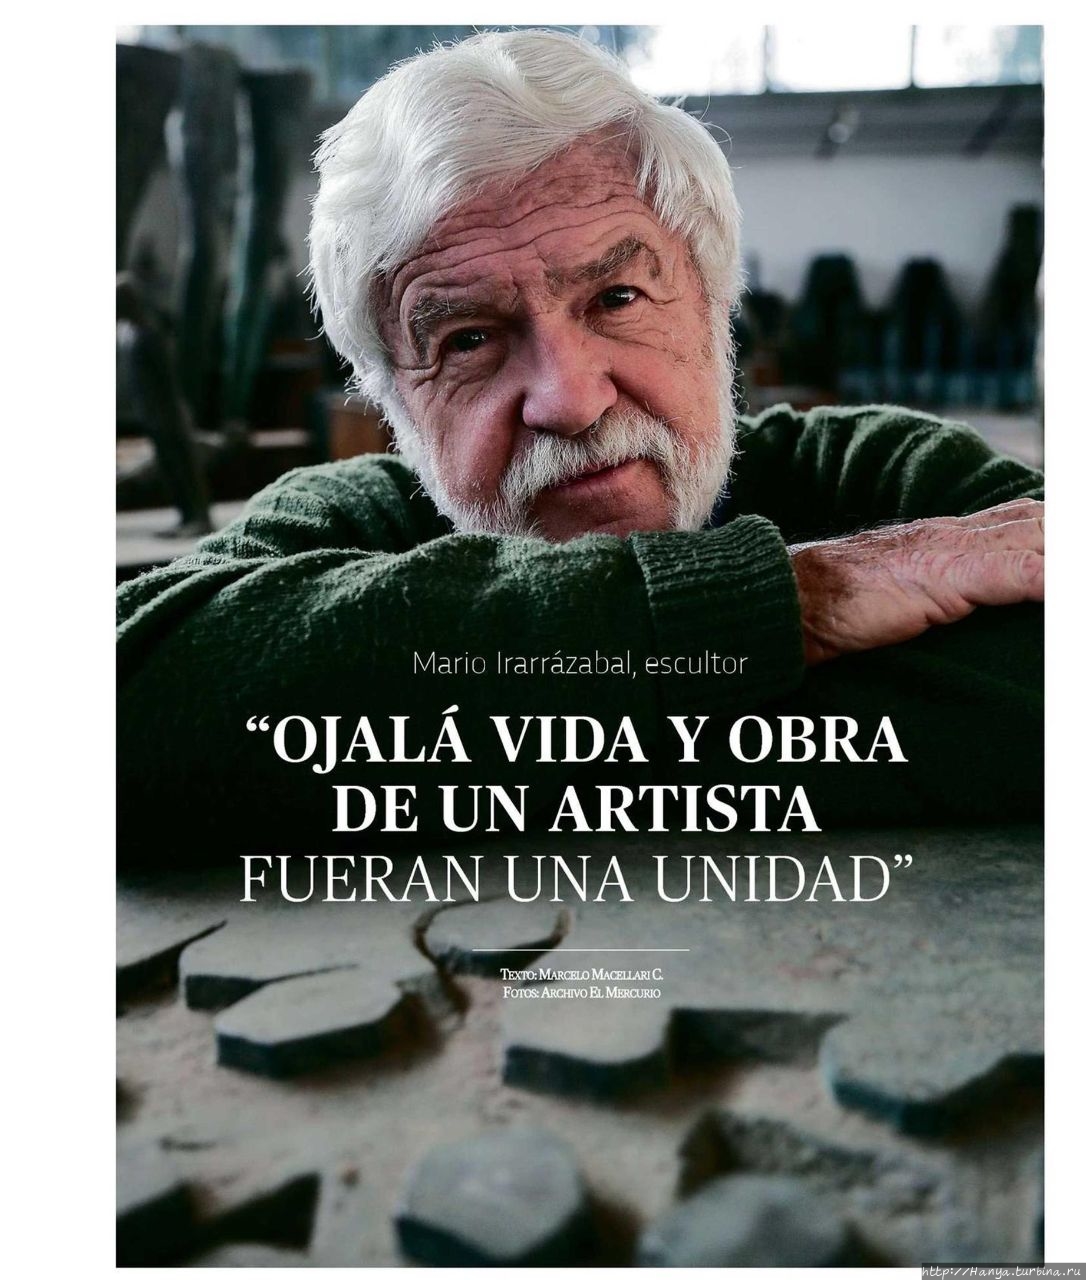 Чилийский скульптор Mario Irarrázabal Covarrubias. Из интернета Вальпараисо, Чили